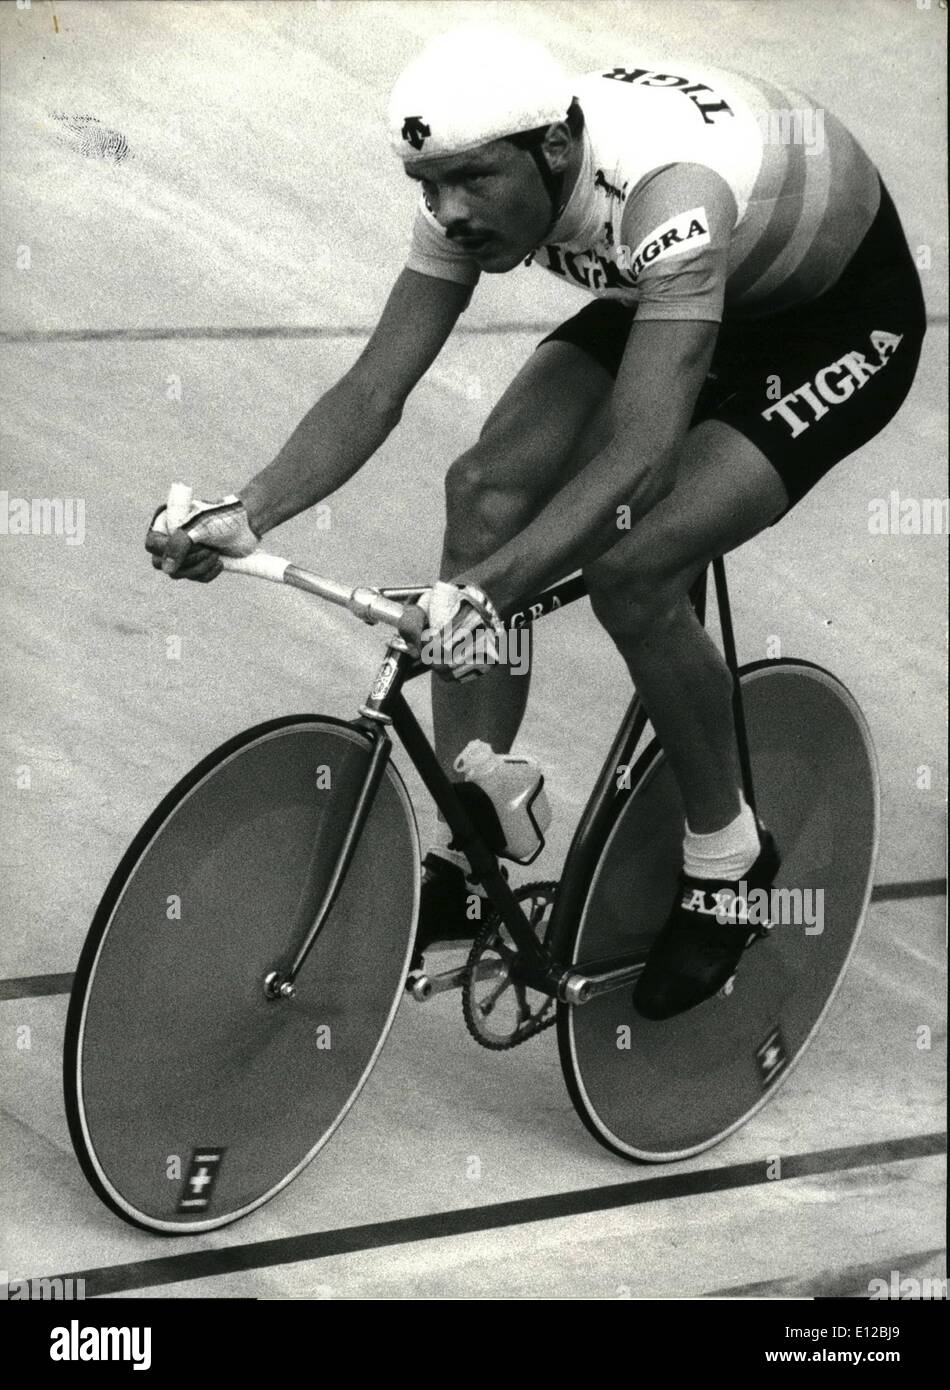 Dic. 09, 2011 - ciclismo Record mondiale di Zurigo. Ciclista svizzero Beat Meister hanno stabilito un nuovo record mondiale di oltre 100km sulla porta aperta race course a Zurigo Oerlikon di recente. Ha guidato la 100km in 2:11:21,4, 1 minuto e 41 secondi meglio del danese Ole Ritter a Città del Messico nel 1971. Luglio 22, 86 Foto Stock